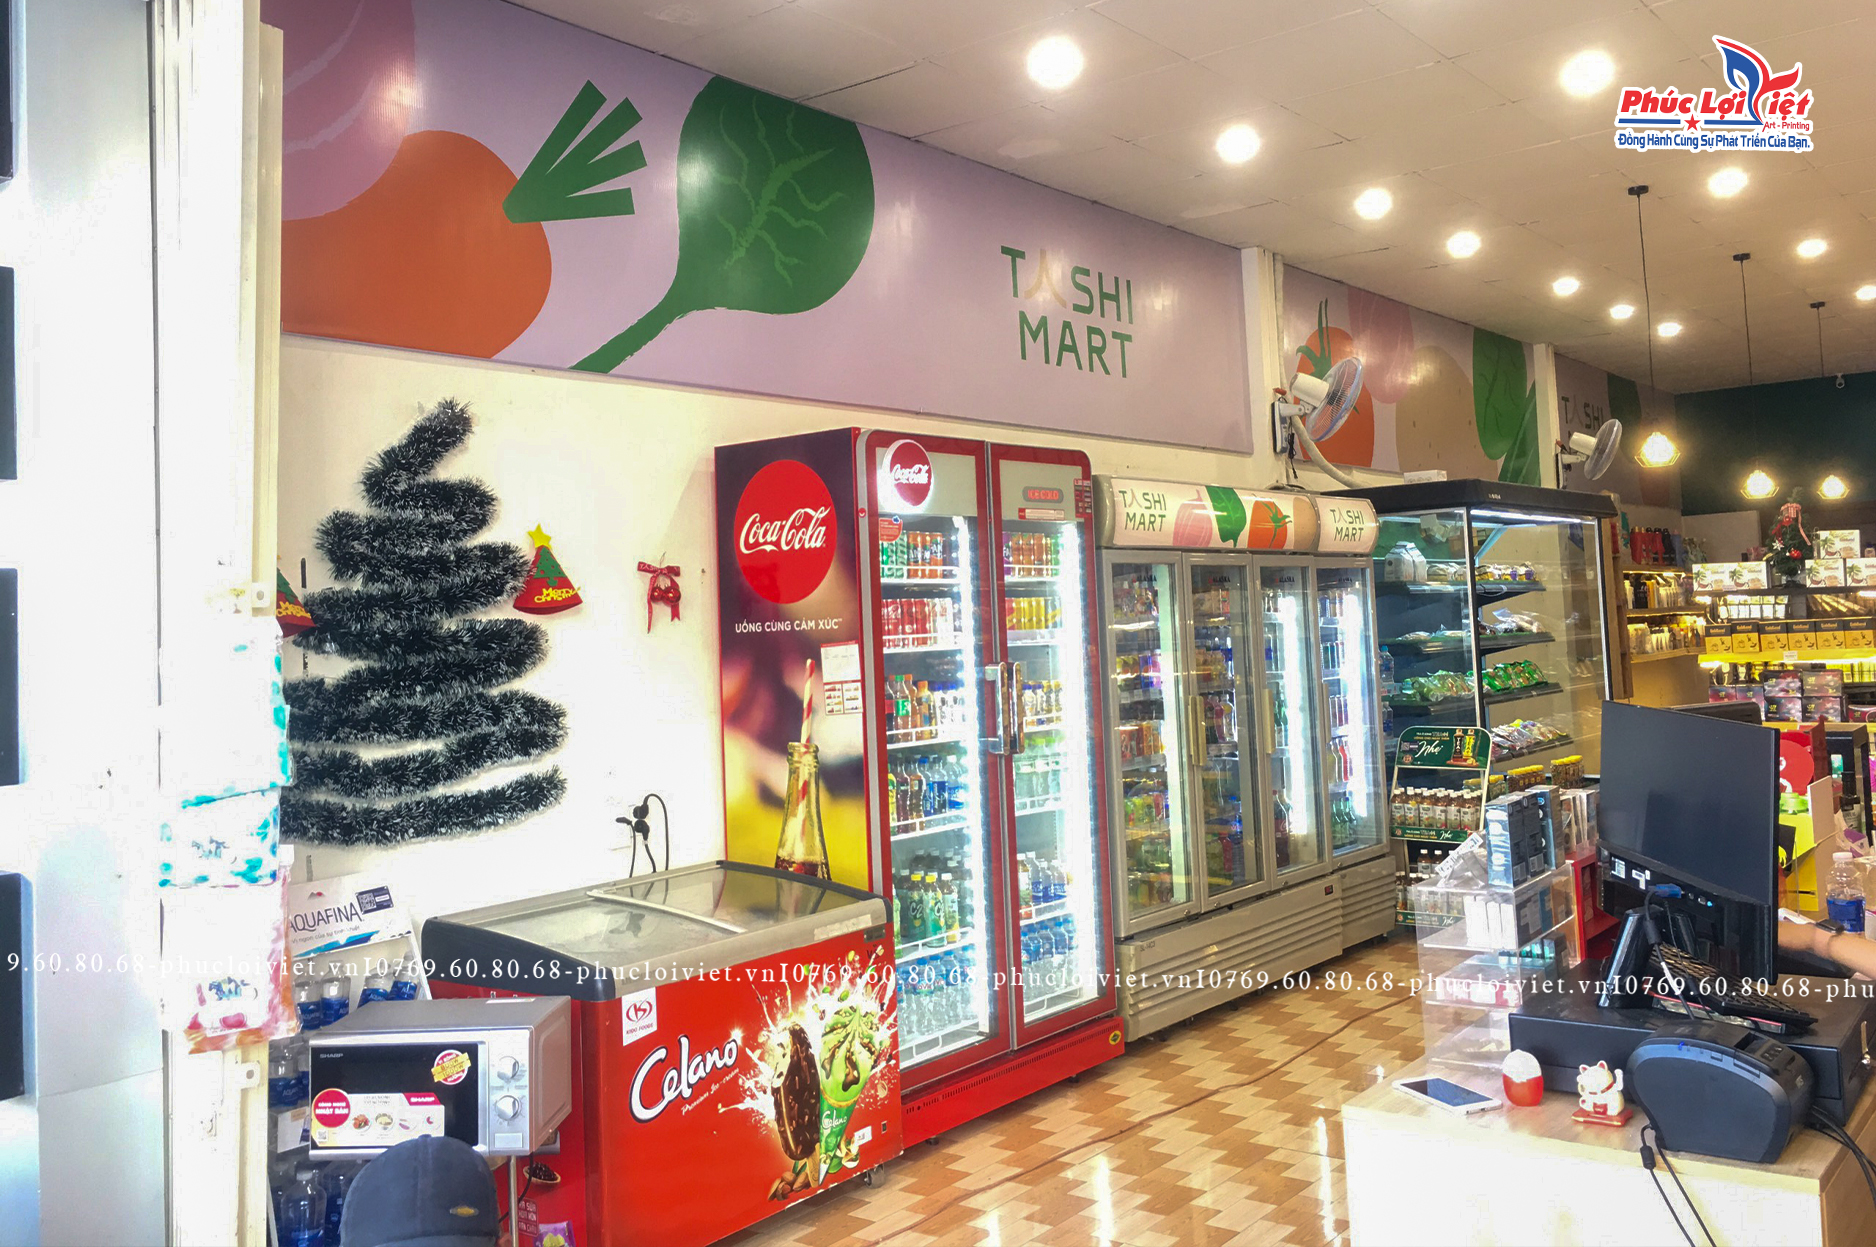 Hoàn thiện thi công nội thất siêu thị mini TASHI MART